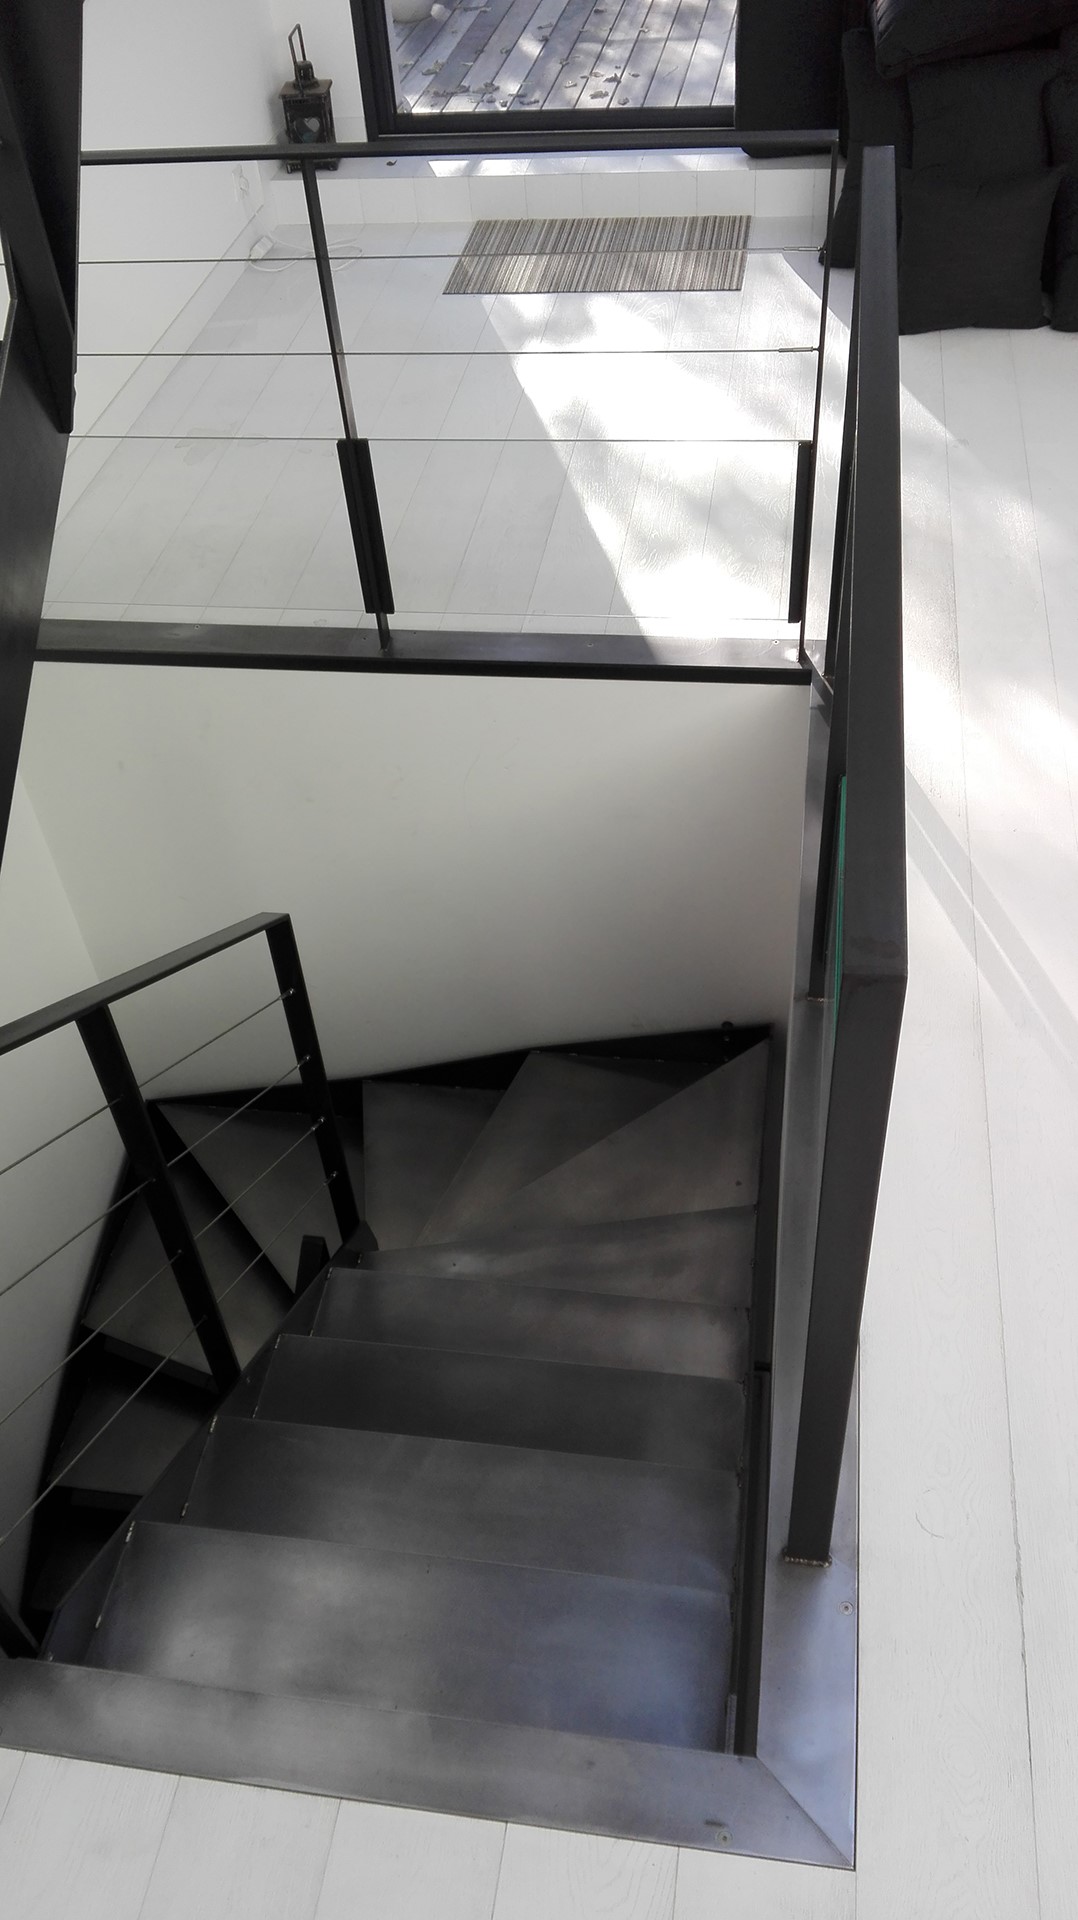 Escalier demi tournant et garde-corps en acier, La Baule, steel contemporain